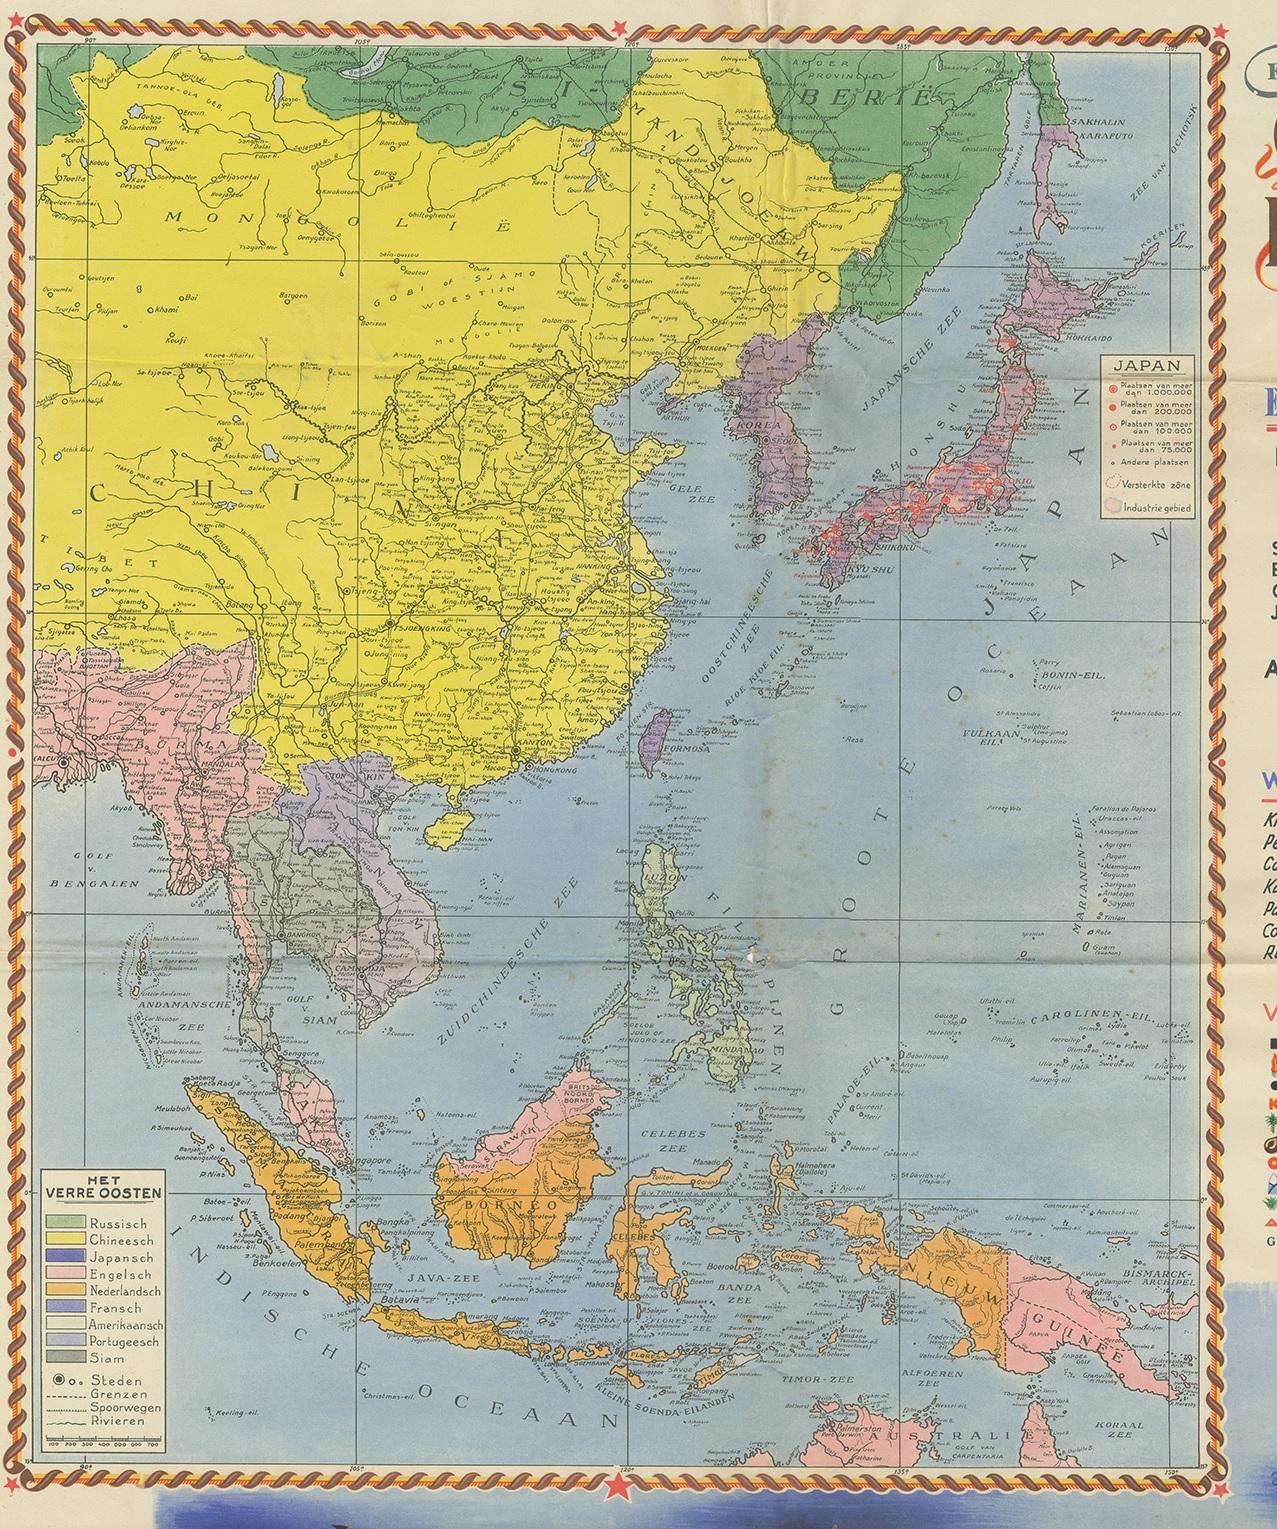 Schönes Plakat von Niederländisch-Ostindien mit dem Titel 'Het Verre Oosten'. Dieses Poster enthält eine große Karte von Ostindien mit einer detaillierten Legende. Darunter eine dekorative Karte von Indonesien mit Borneo, Sumatra, Java, Celebes und